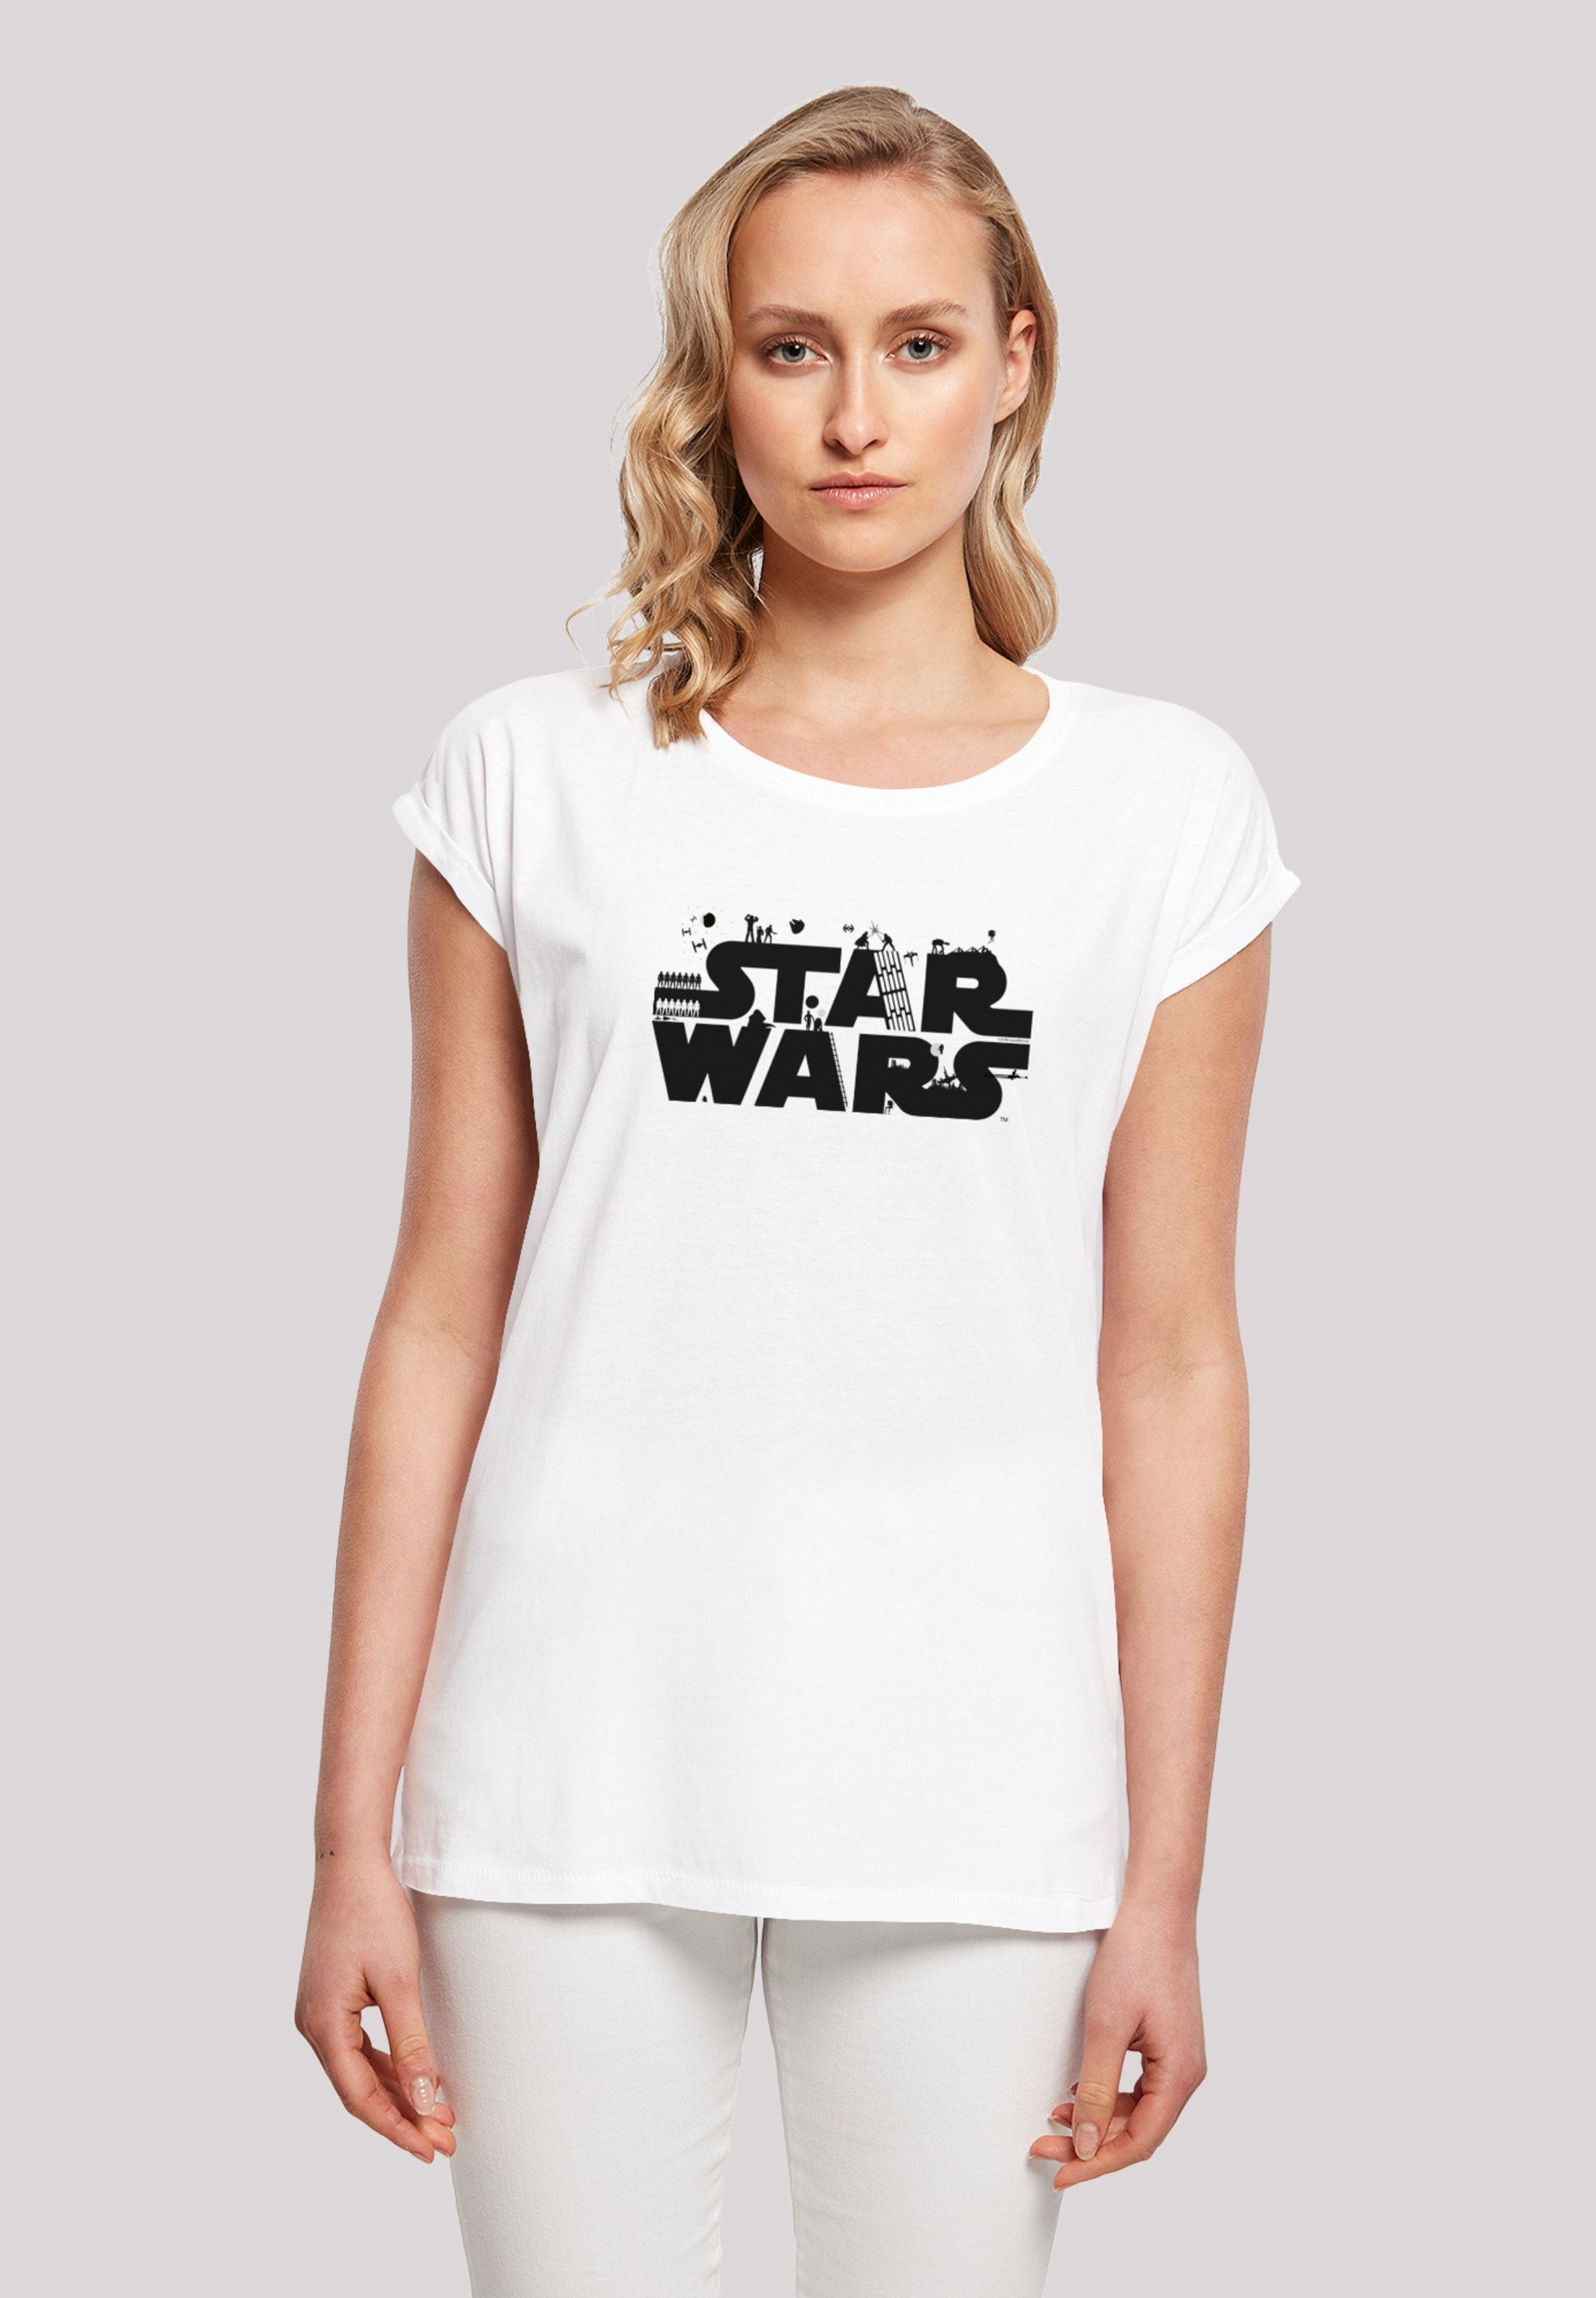 Merchandise online ▷ Wars BAUR kaufen | Star Fanartikel